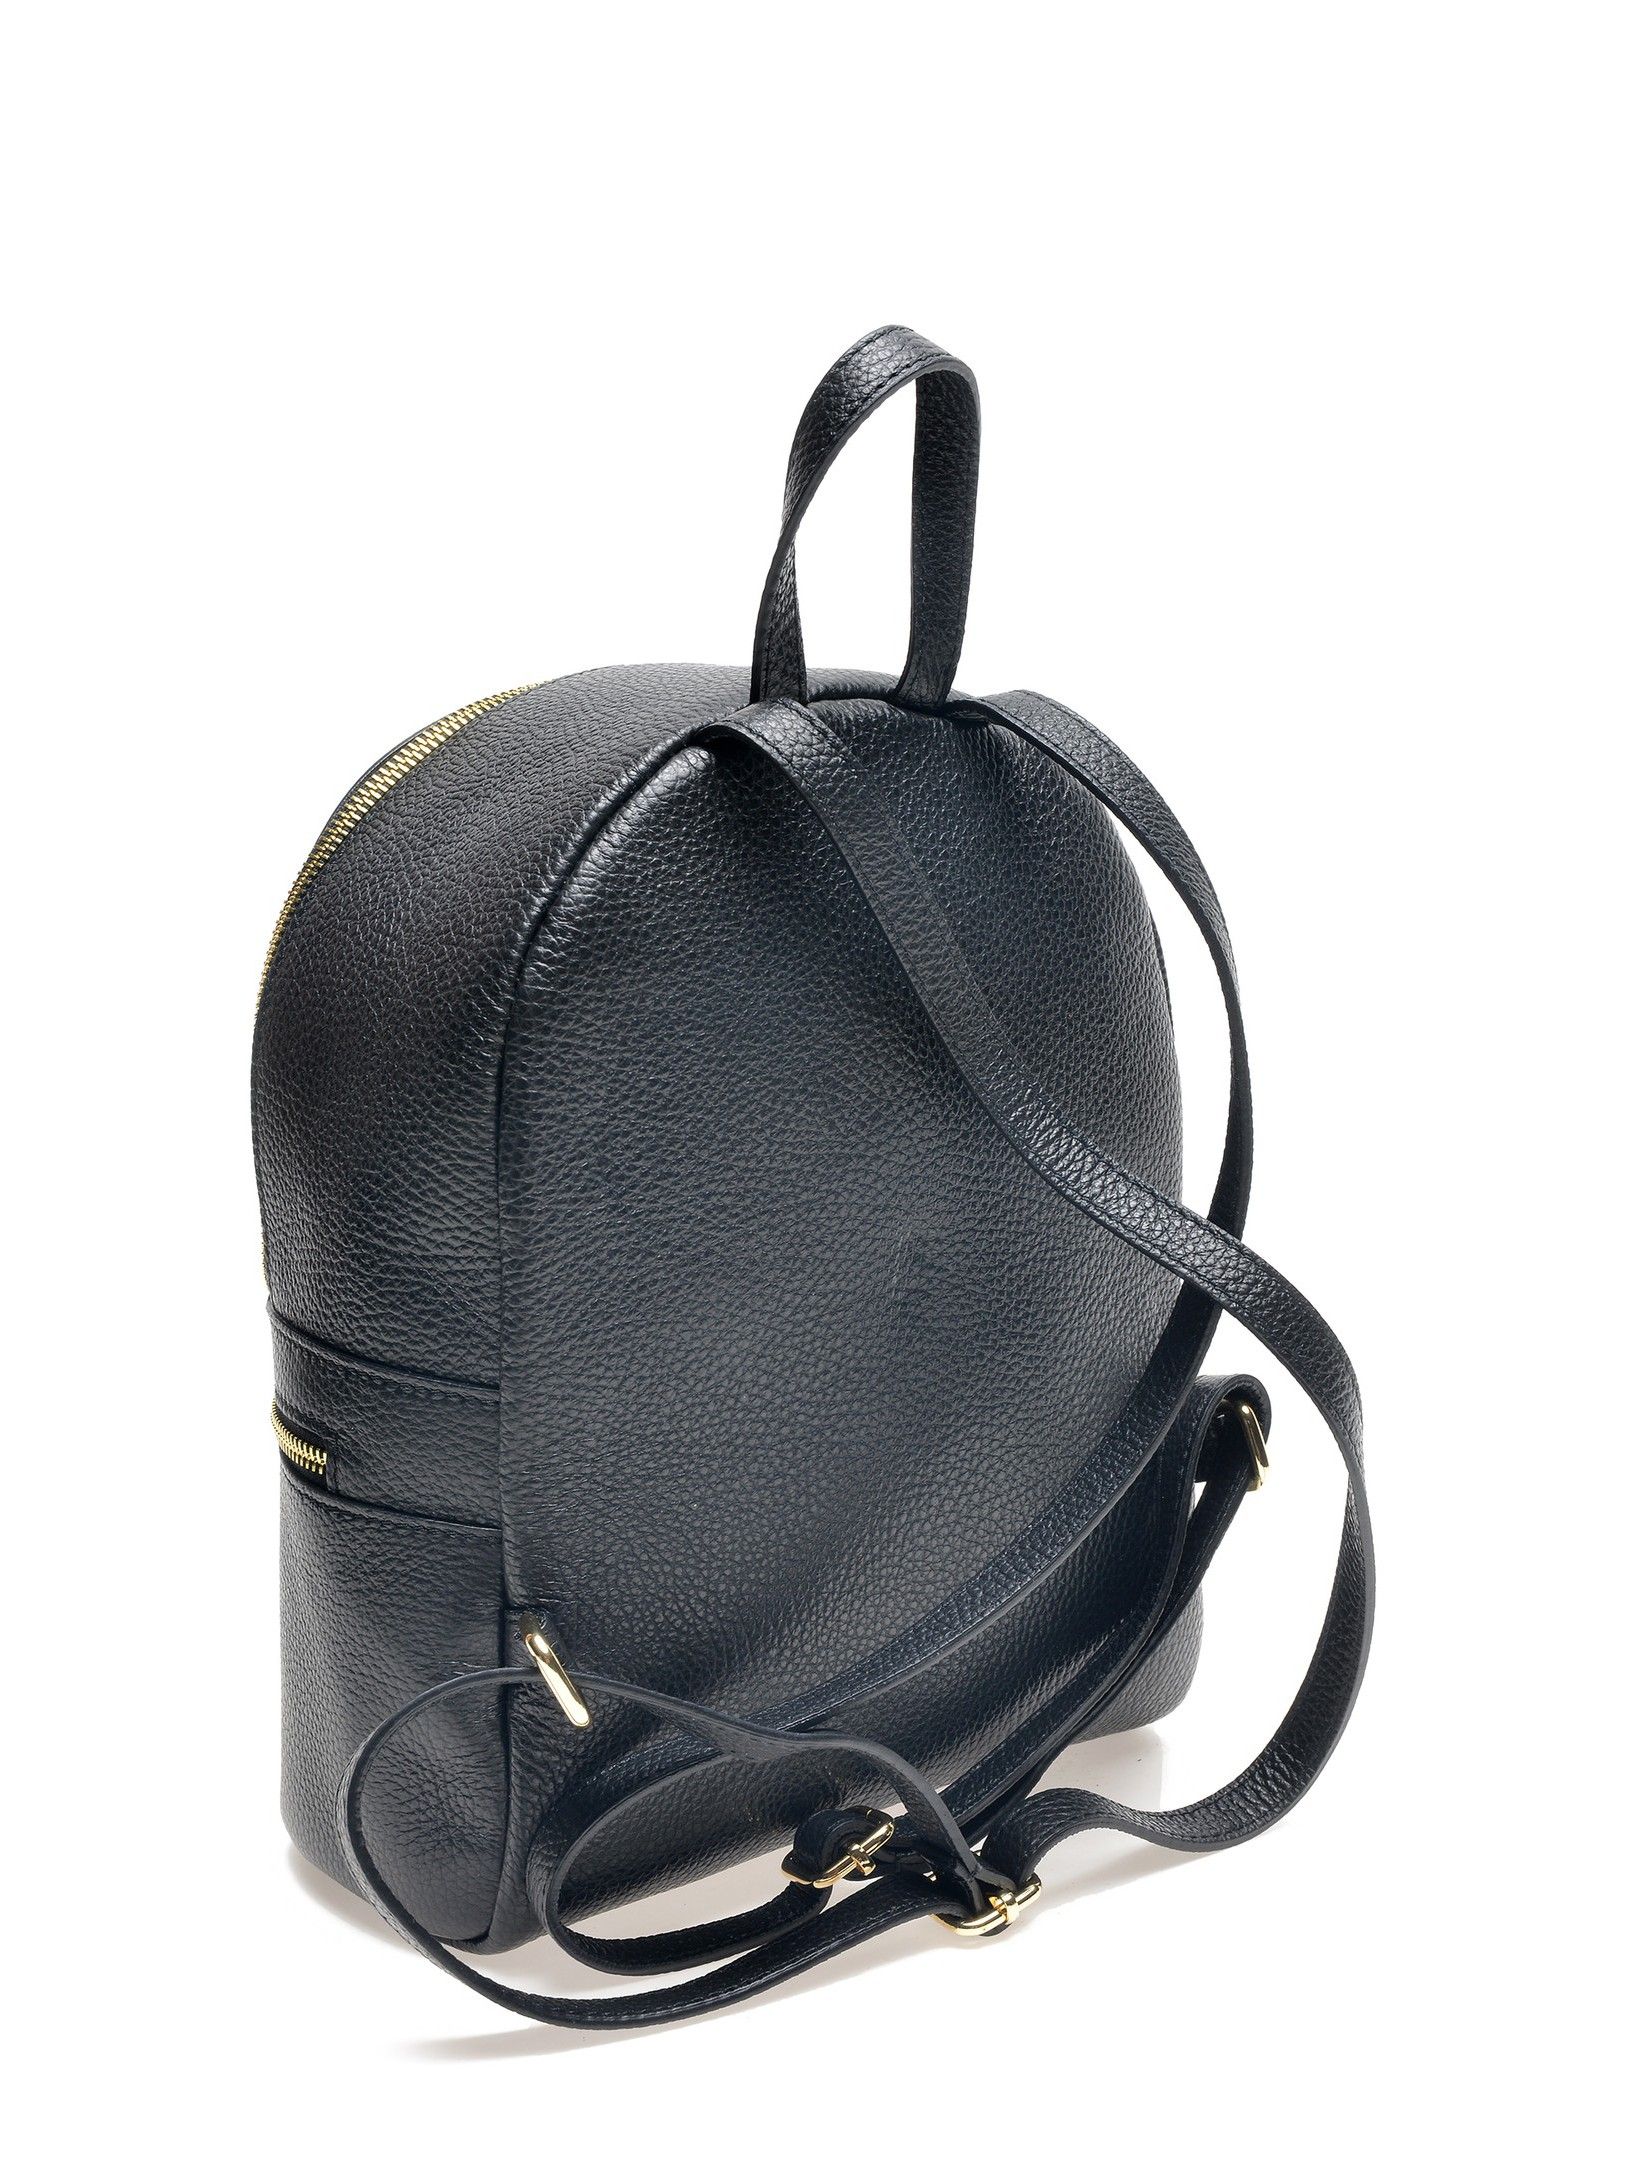 Backpack
100% cow leather
Top zip closure
Front zip pocket
Dimensions (L) 29x23x10 cm
Handle: 19.5 cm
Shoulder strap: 80cm x 2